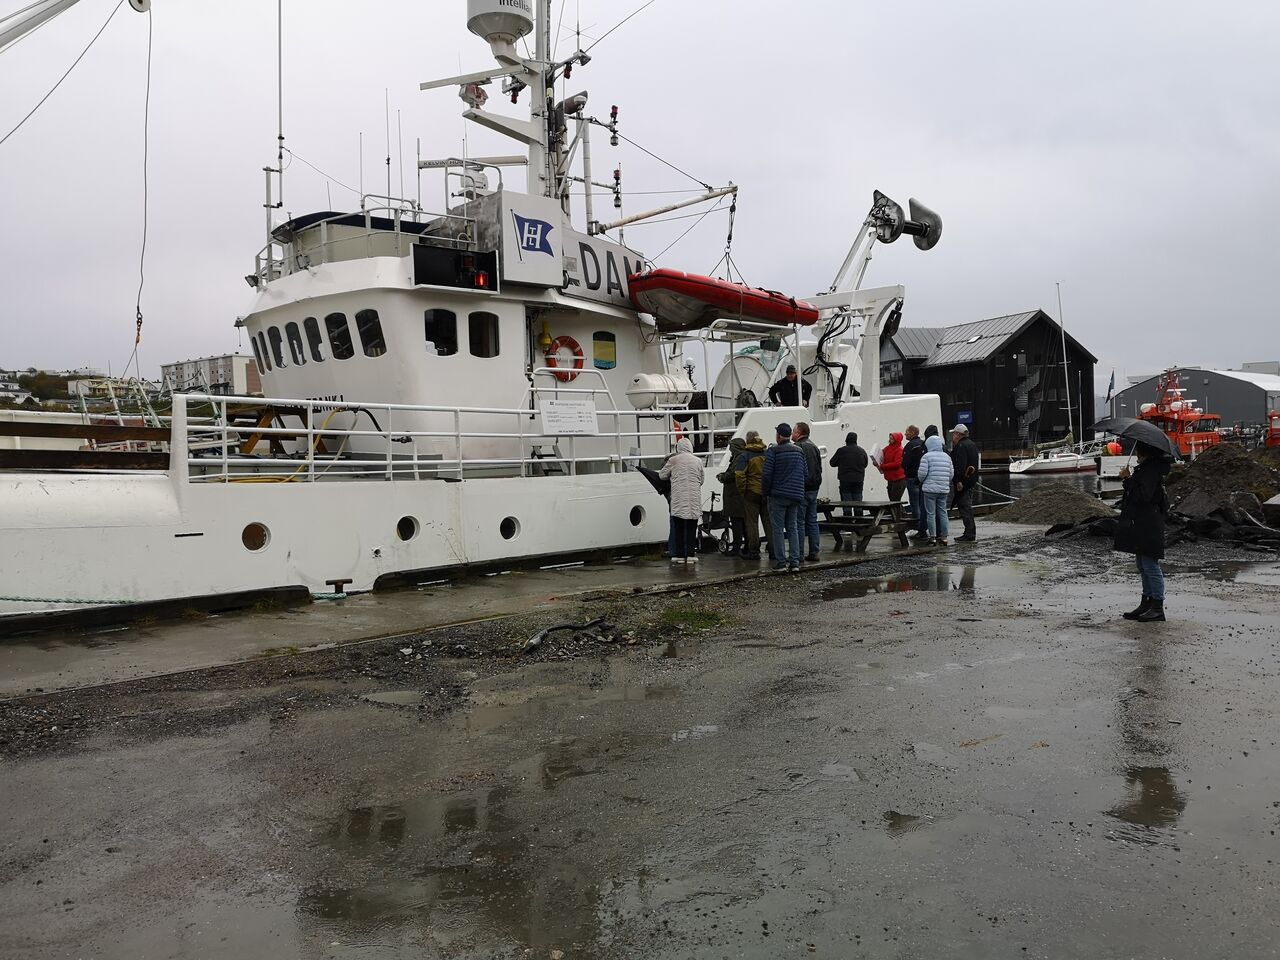 Flere som ønsker å sikre seg hvalkjøtt fra Fiskebank1 på kullkrankaia i Kristiansund i dag. Foto: Kurt Helge Røsand / KSU.NO